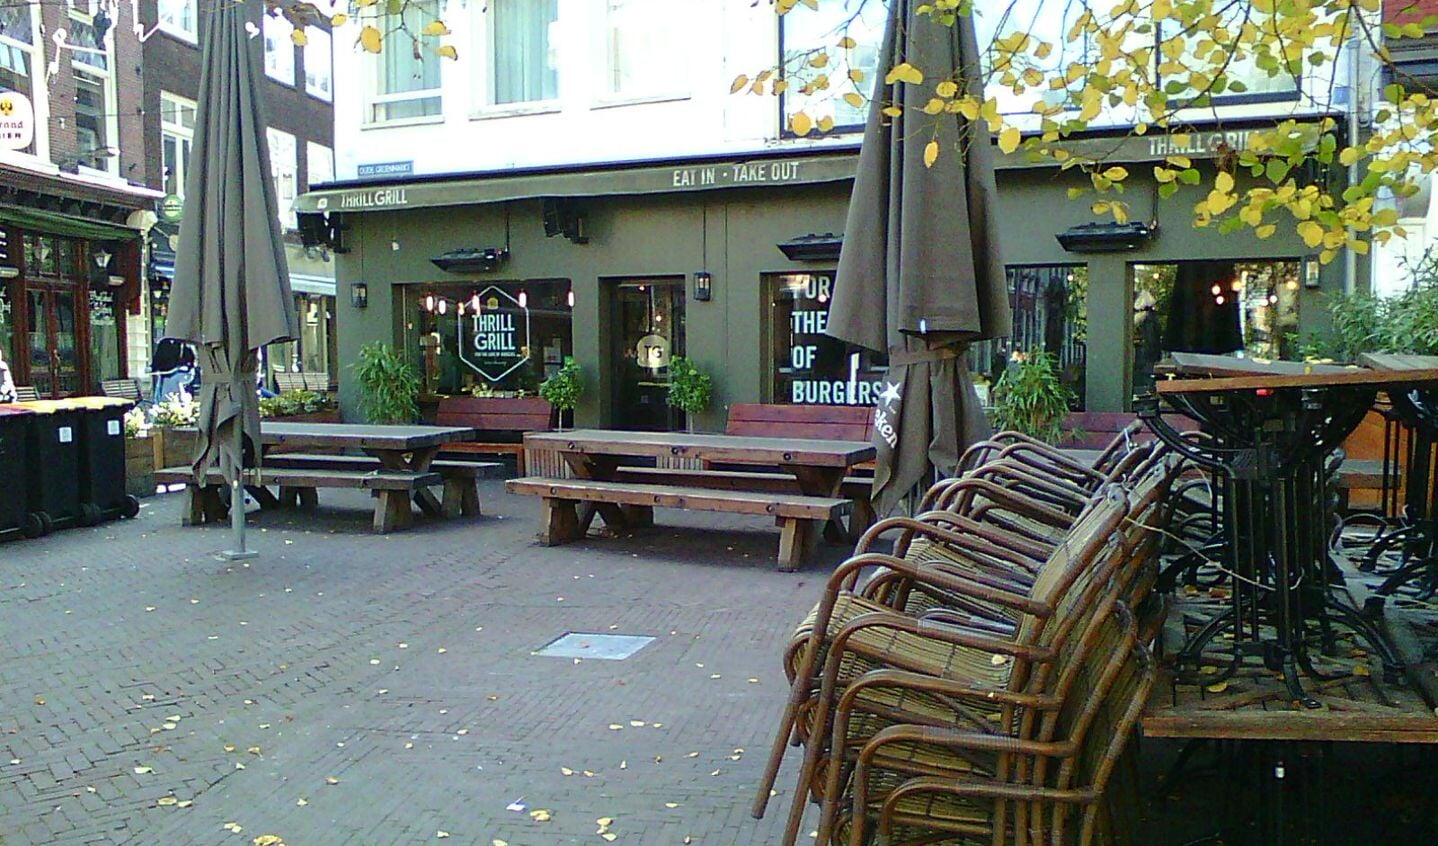 Lege terrassen en lege panden sieren de stad Haarlem.